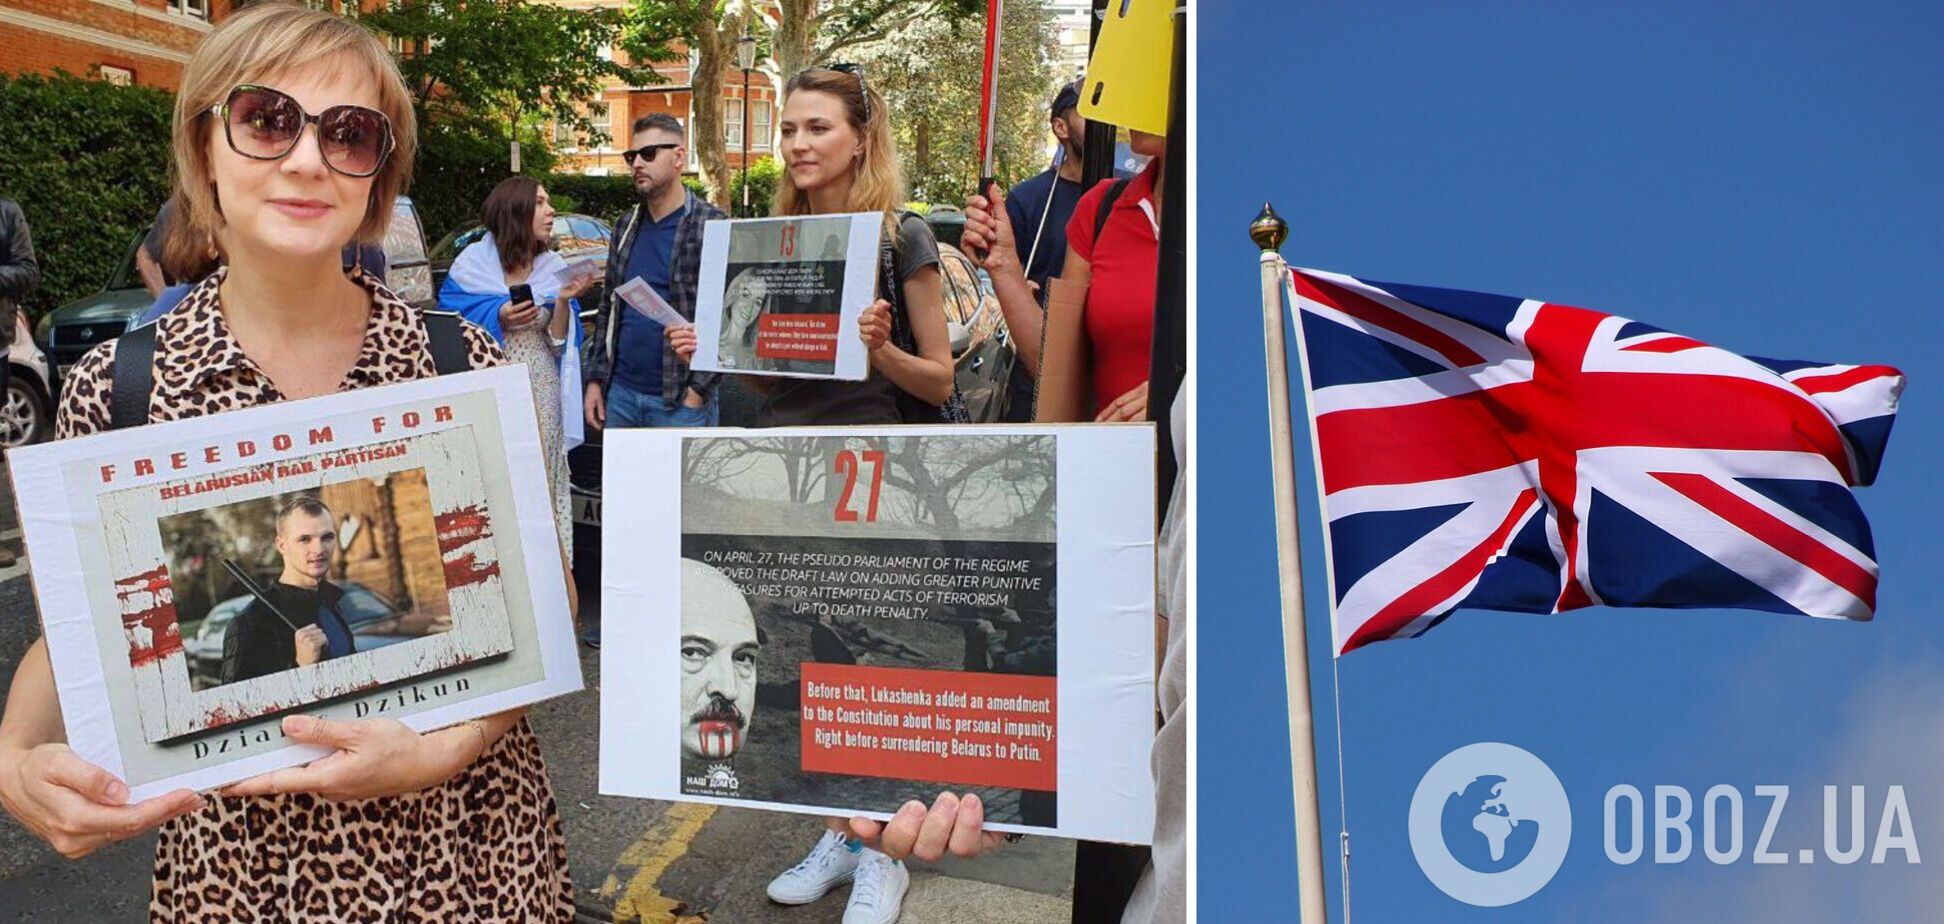 У Лондоні пройшла акція на підтримку 'рейкових партизан' з Білорусі, які перешкоджають перекиданню техніки РФ. Фото